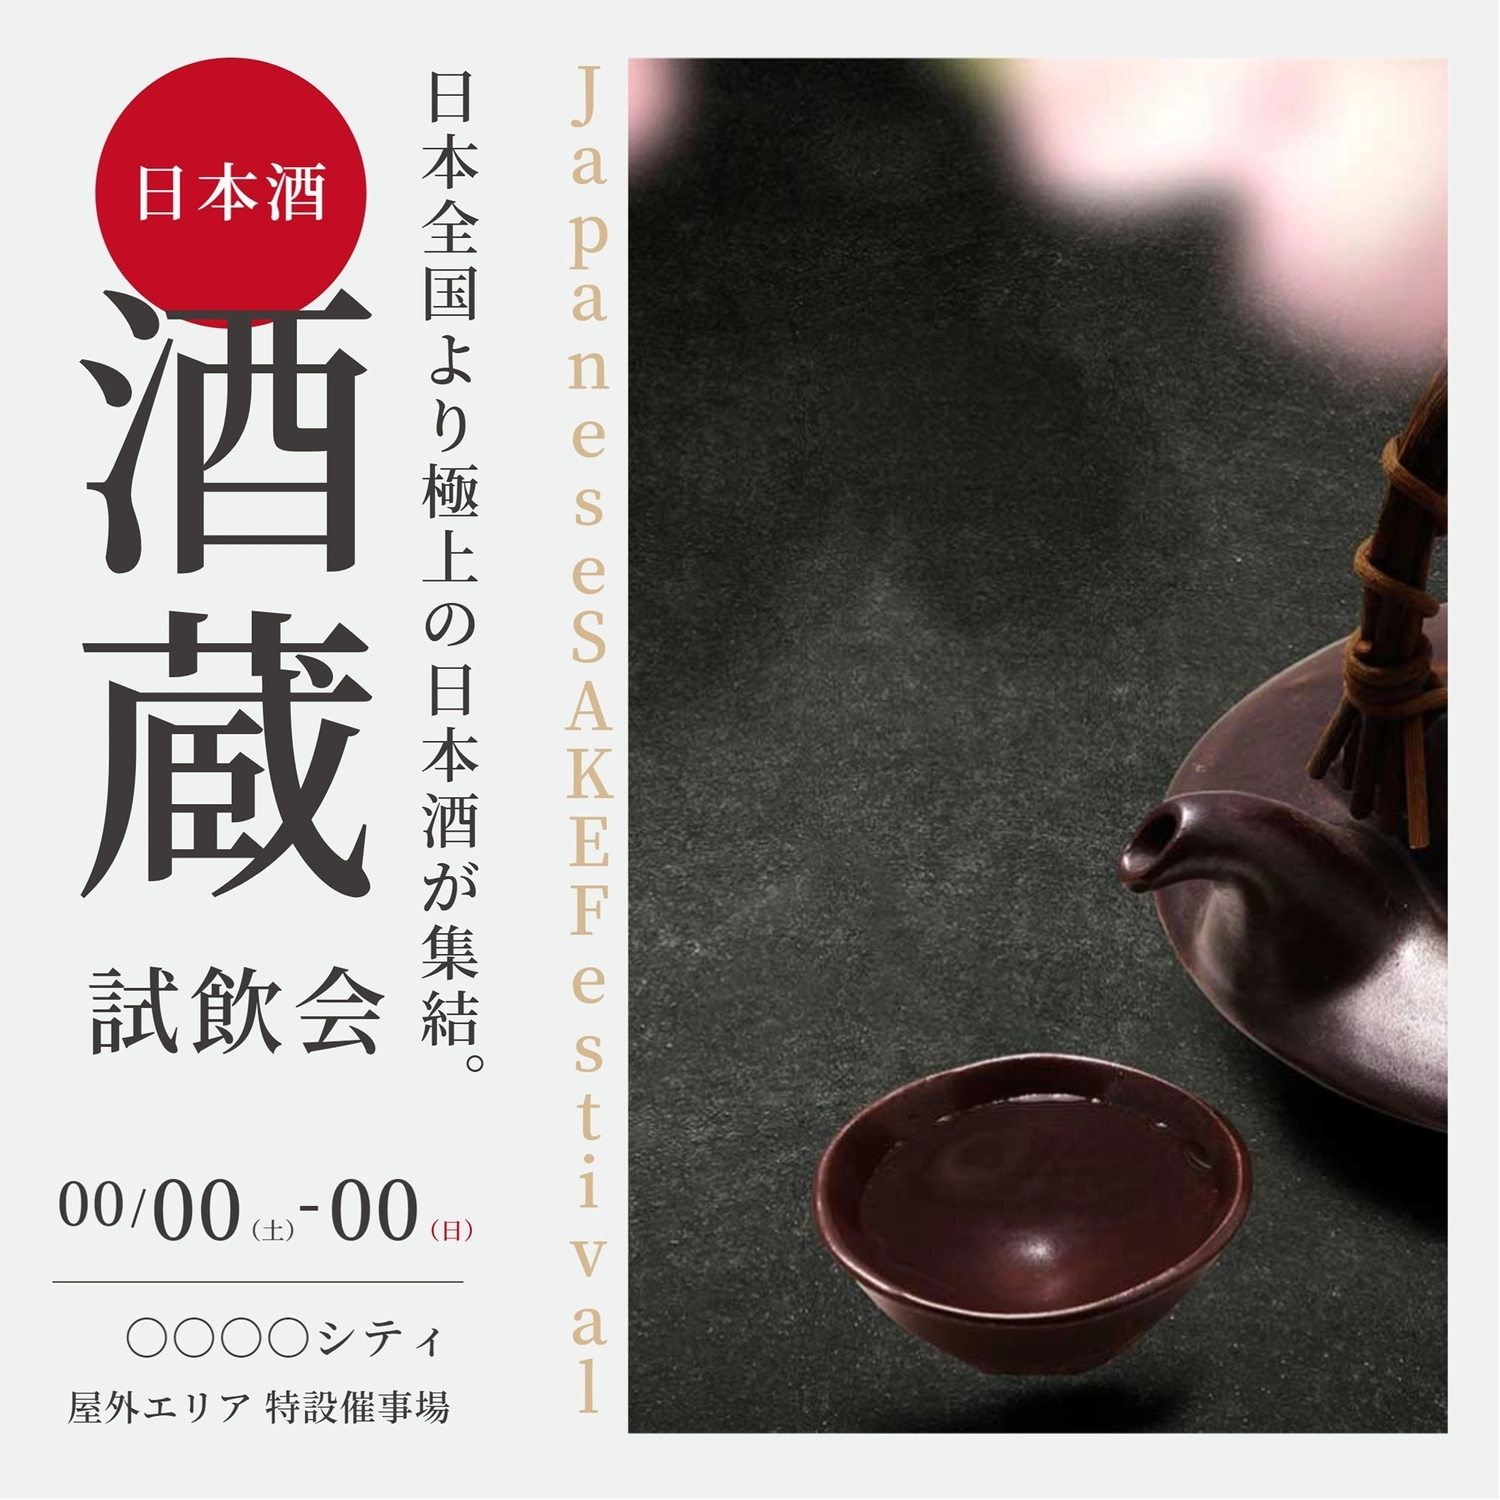 日本酒試飲会デザイン, ảnh, chế độ ăn, Thời gian giới hạn, Instagram Post mẫu